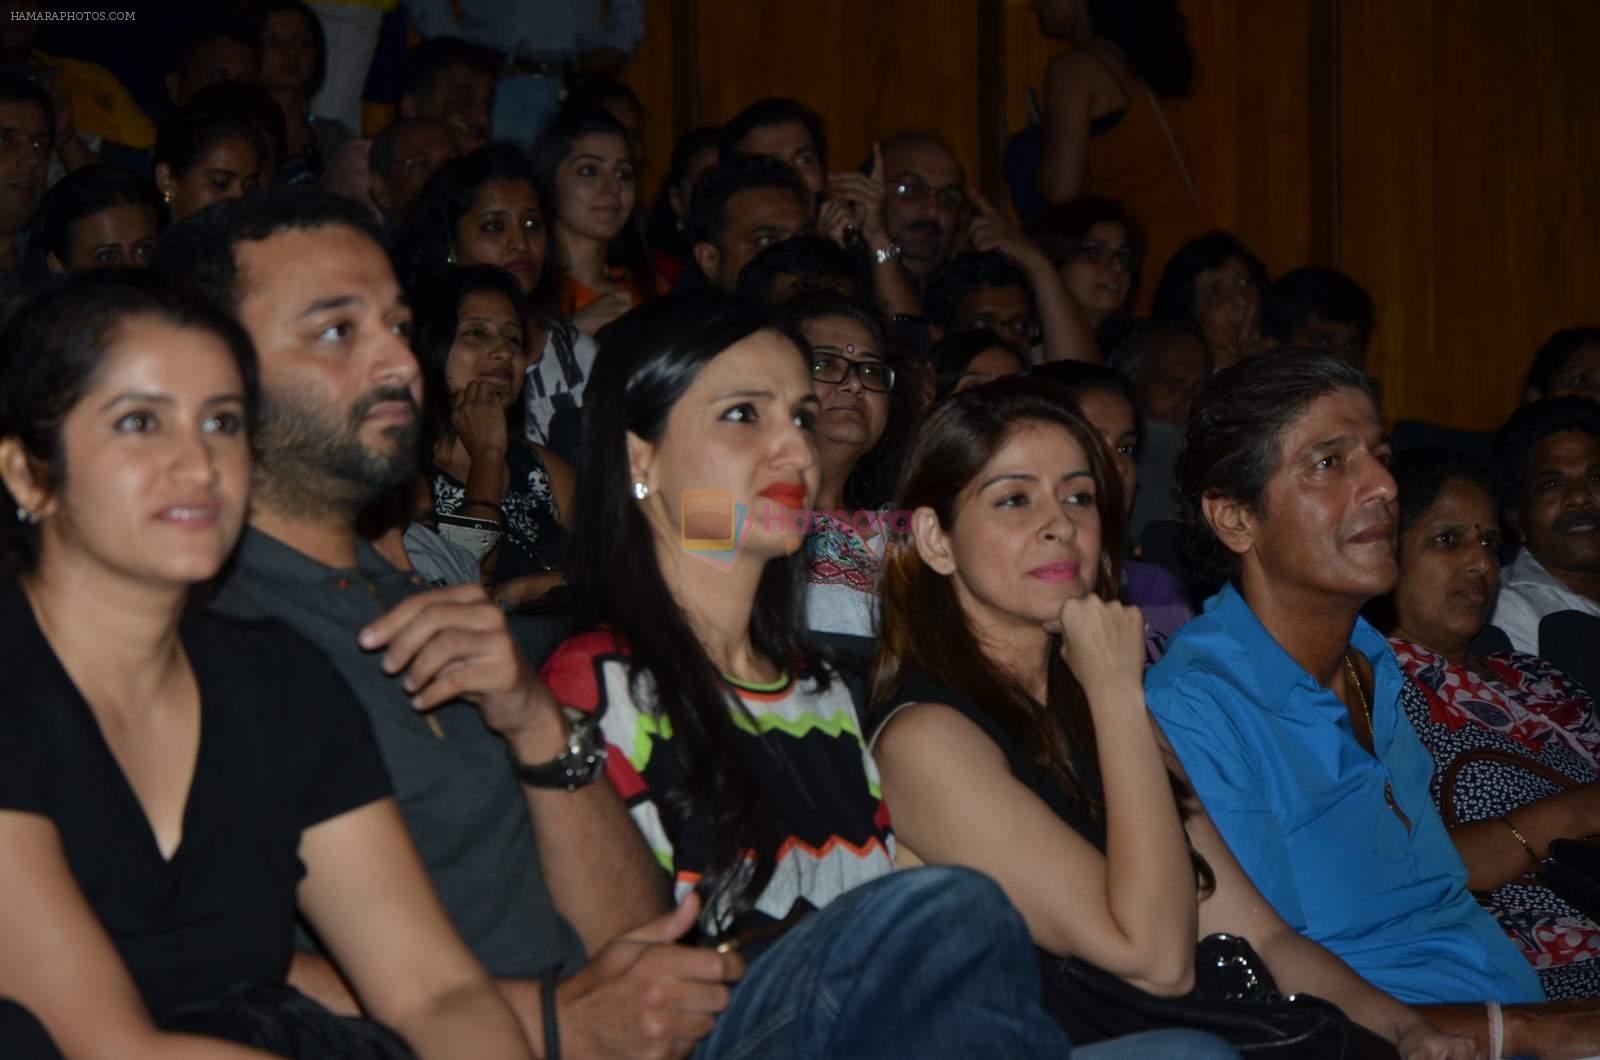 Anu Dewan with wife and kid at Shiamak Dawar show in Mumbai on 30th May 2015